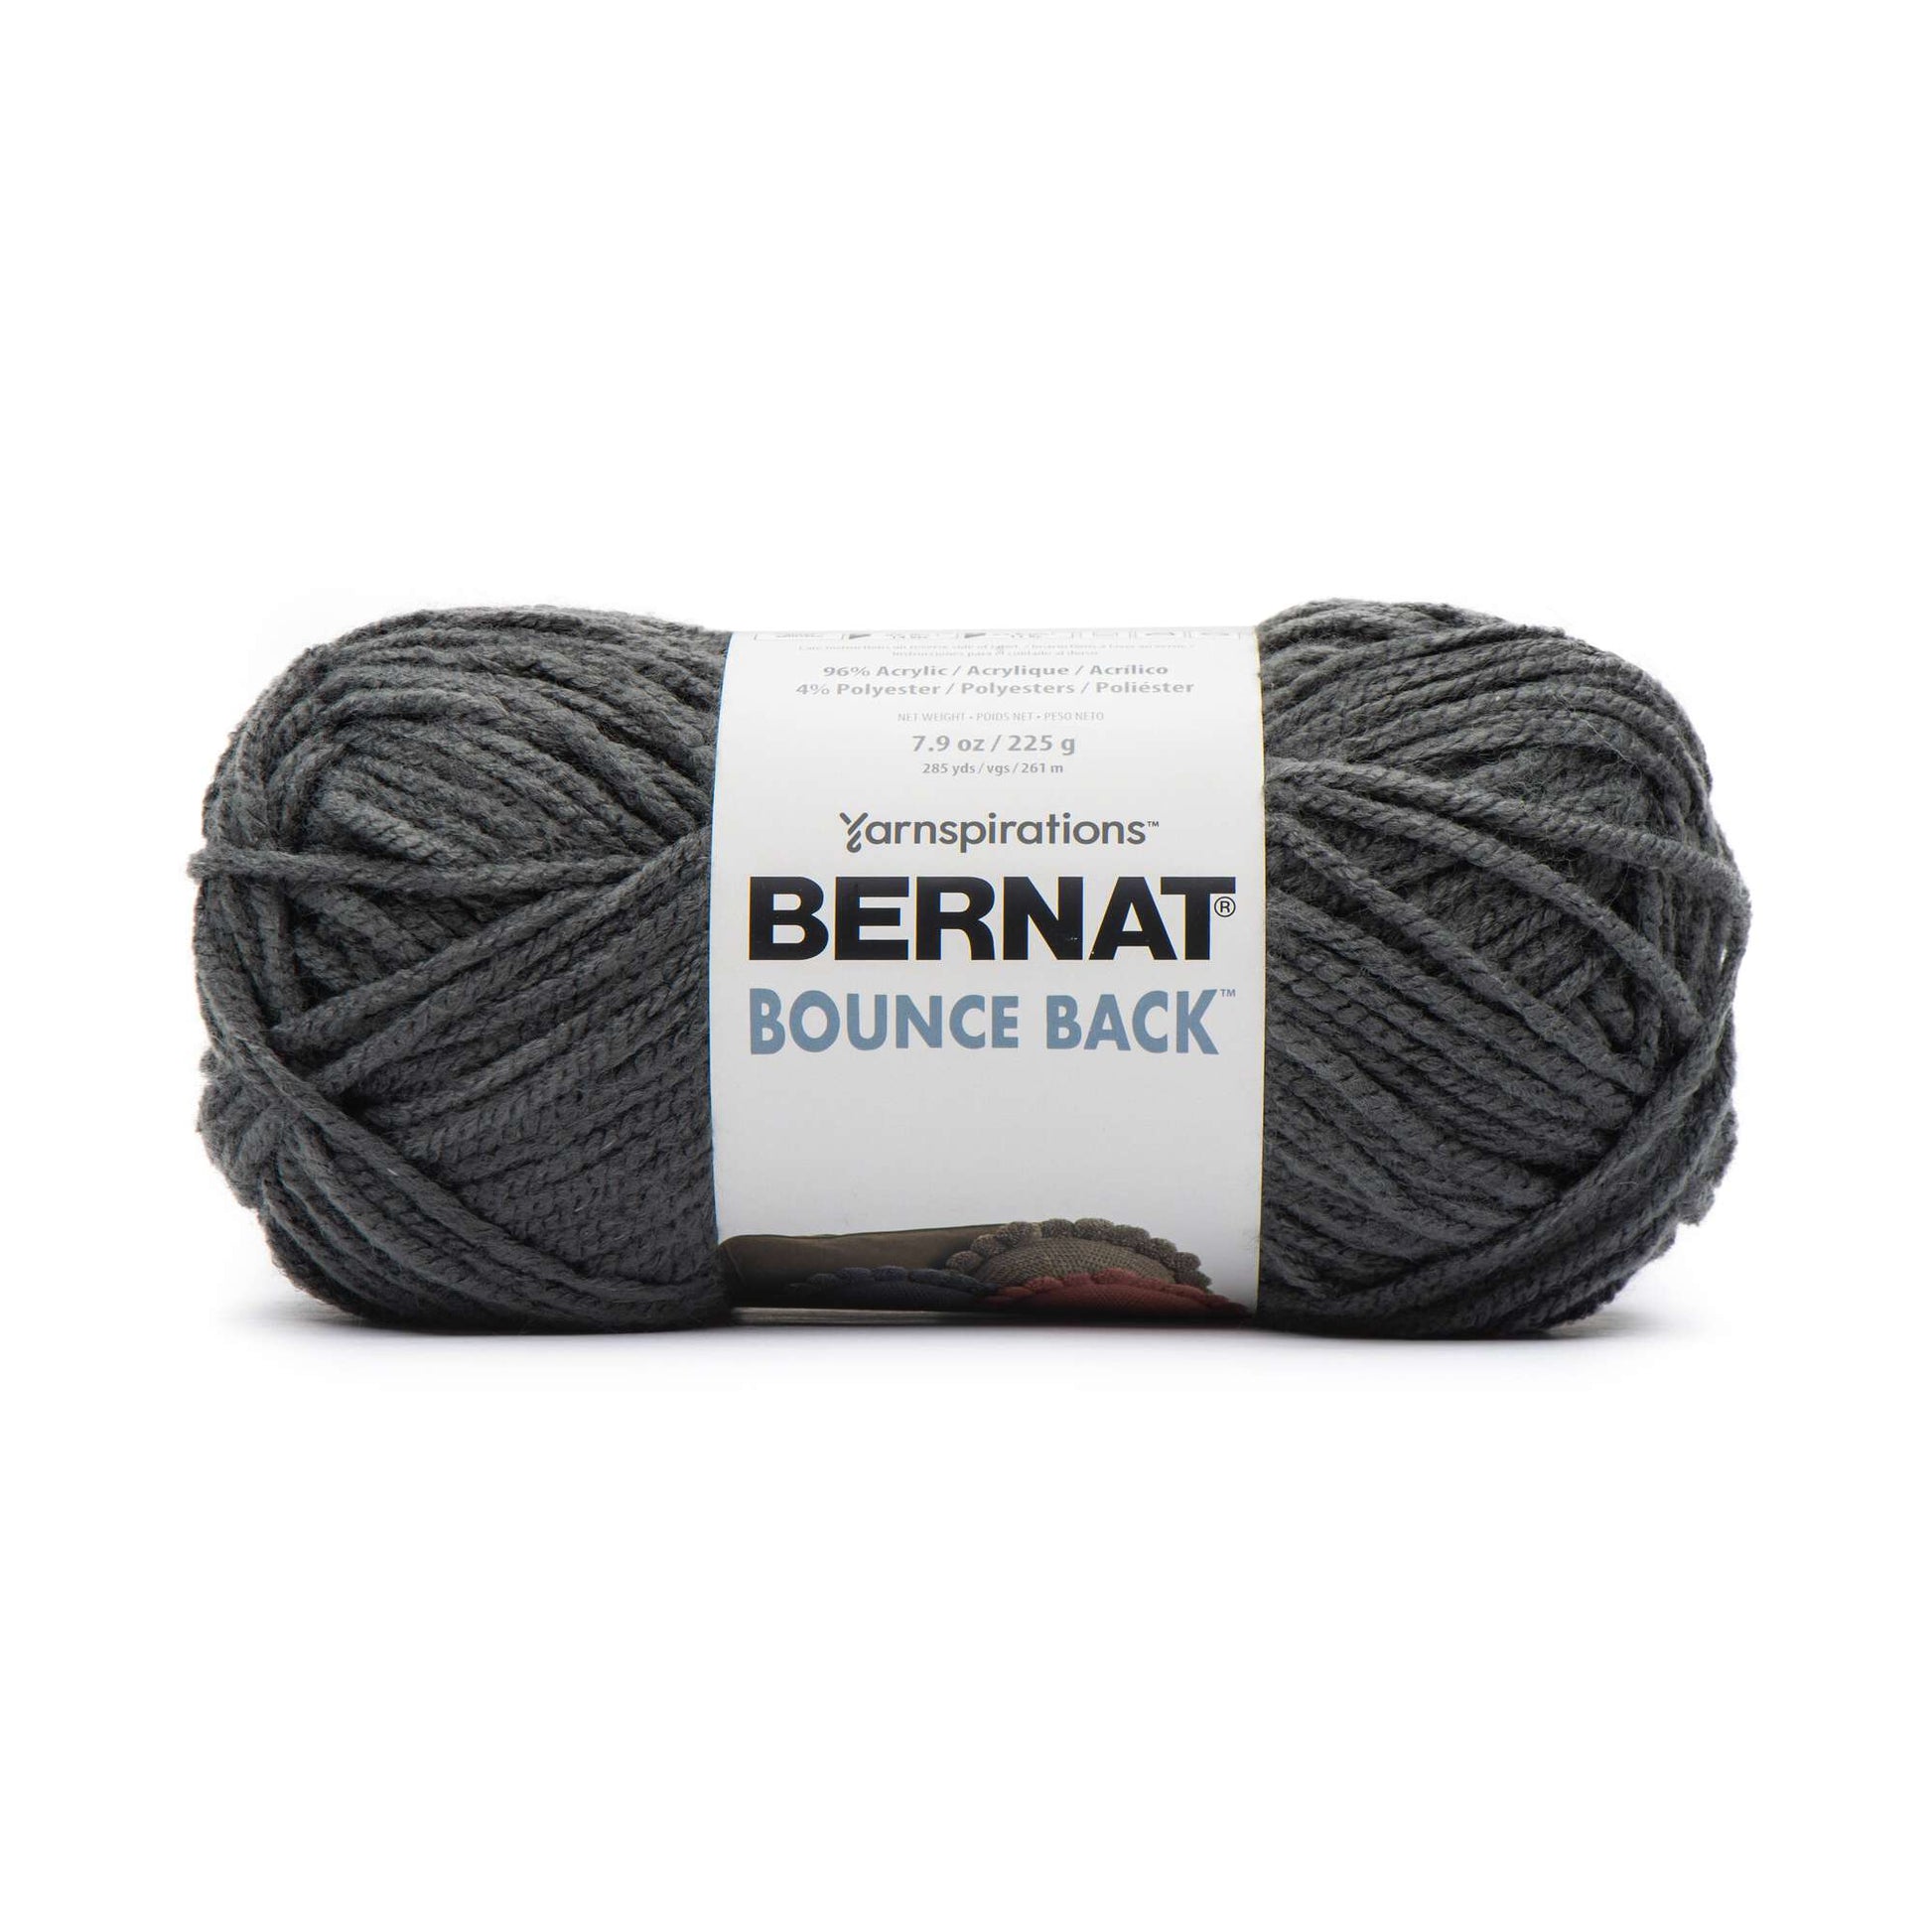 Bernat Bounce Back Yarn - Discontinued Shades